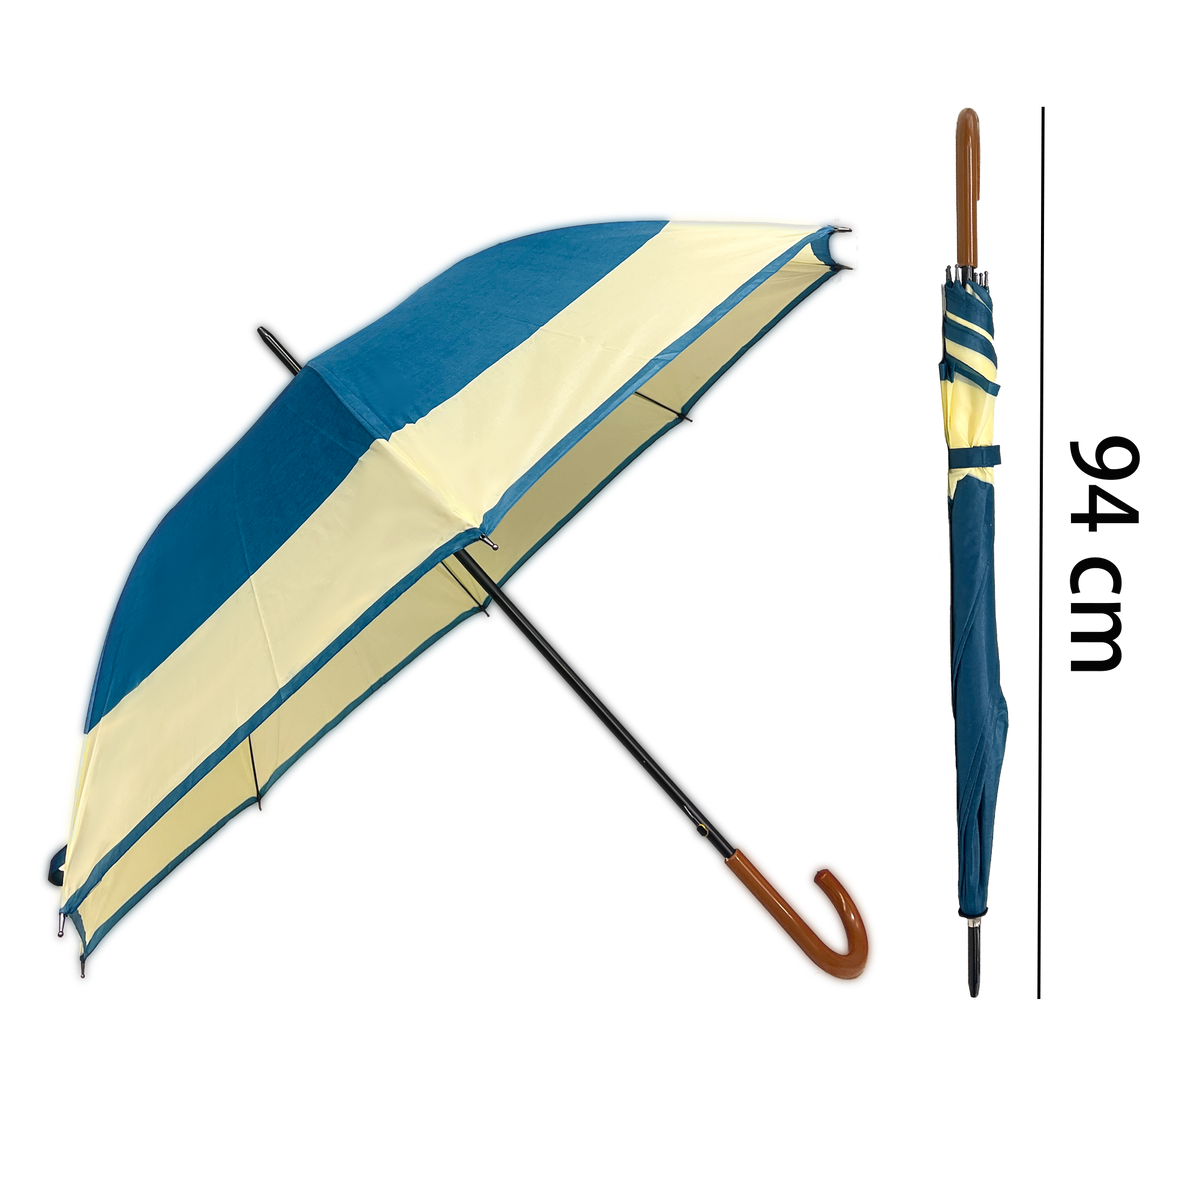 Klasyczny parasol z automatycznym otwieraniem - krzywa drewniana uchwyt i szerokie otwarcie